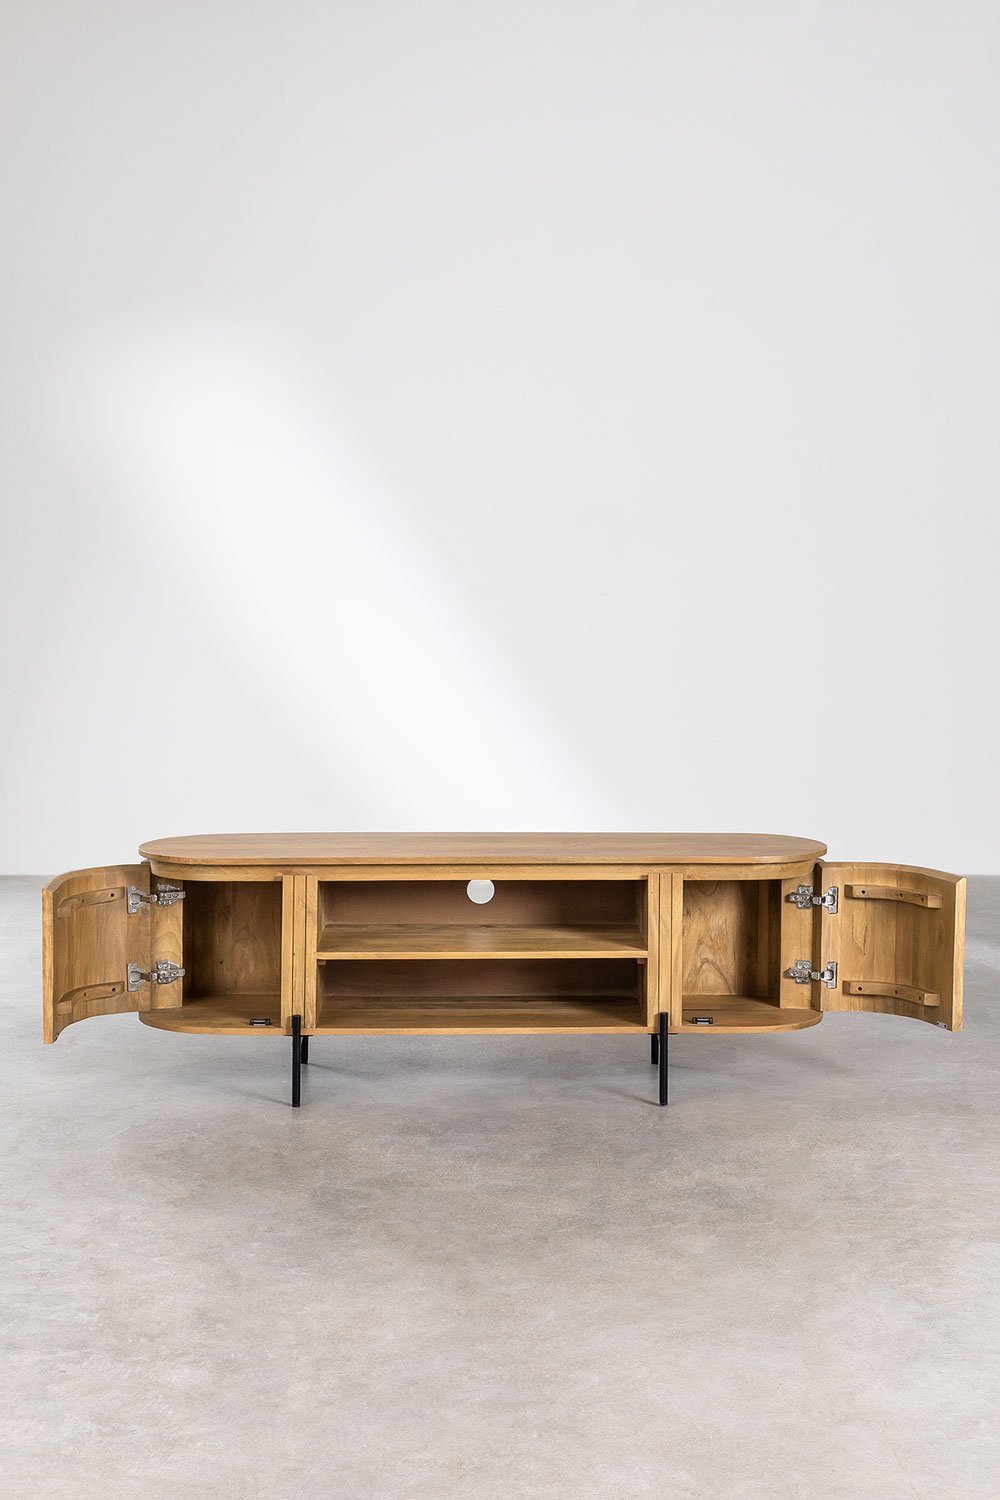 Mueble tv negro madera / acero salón 160 x 40 x 59 cm - Muebles Orencio -  Denzzo